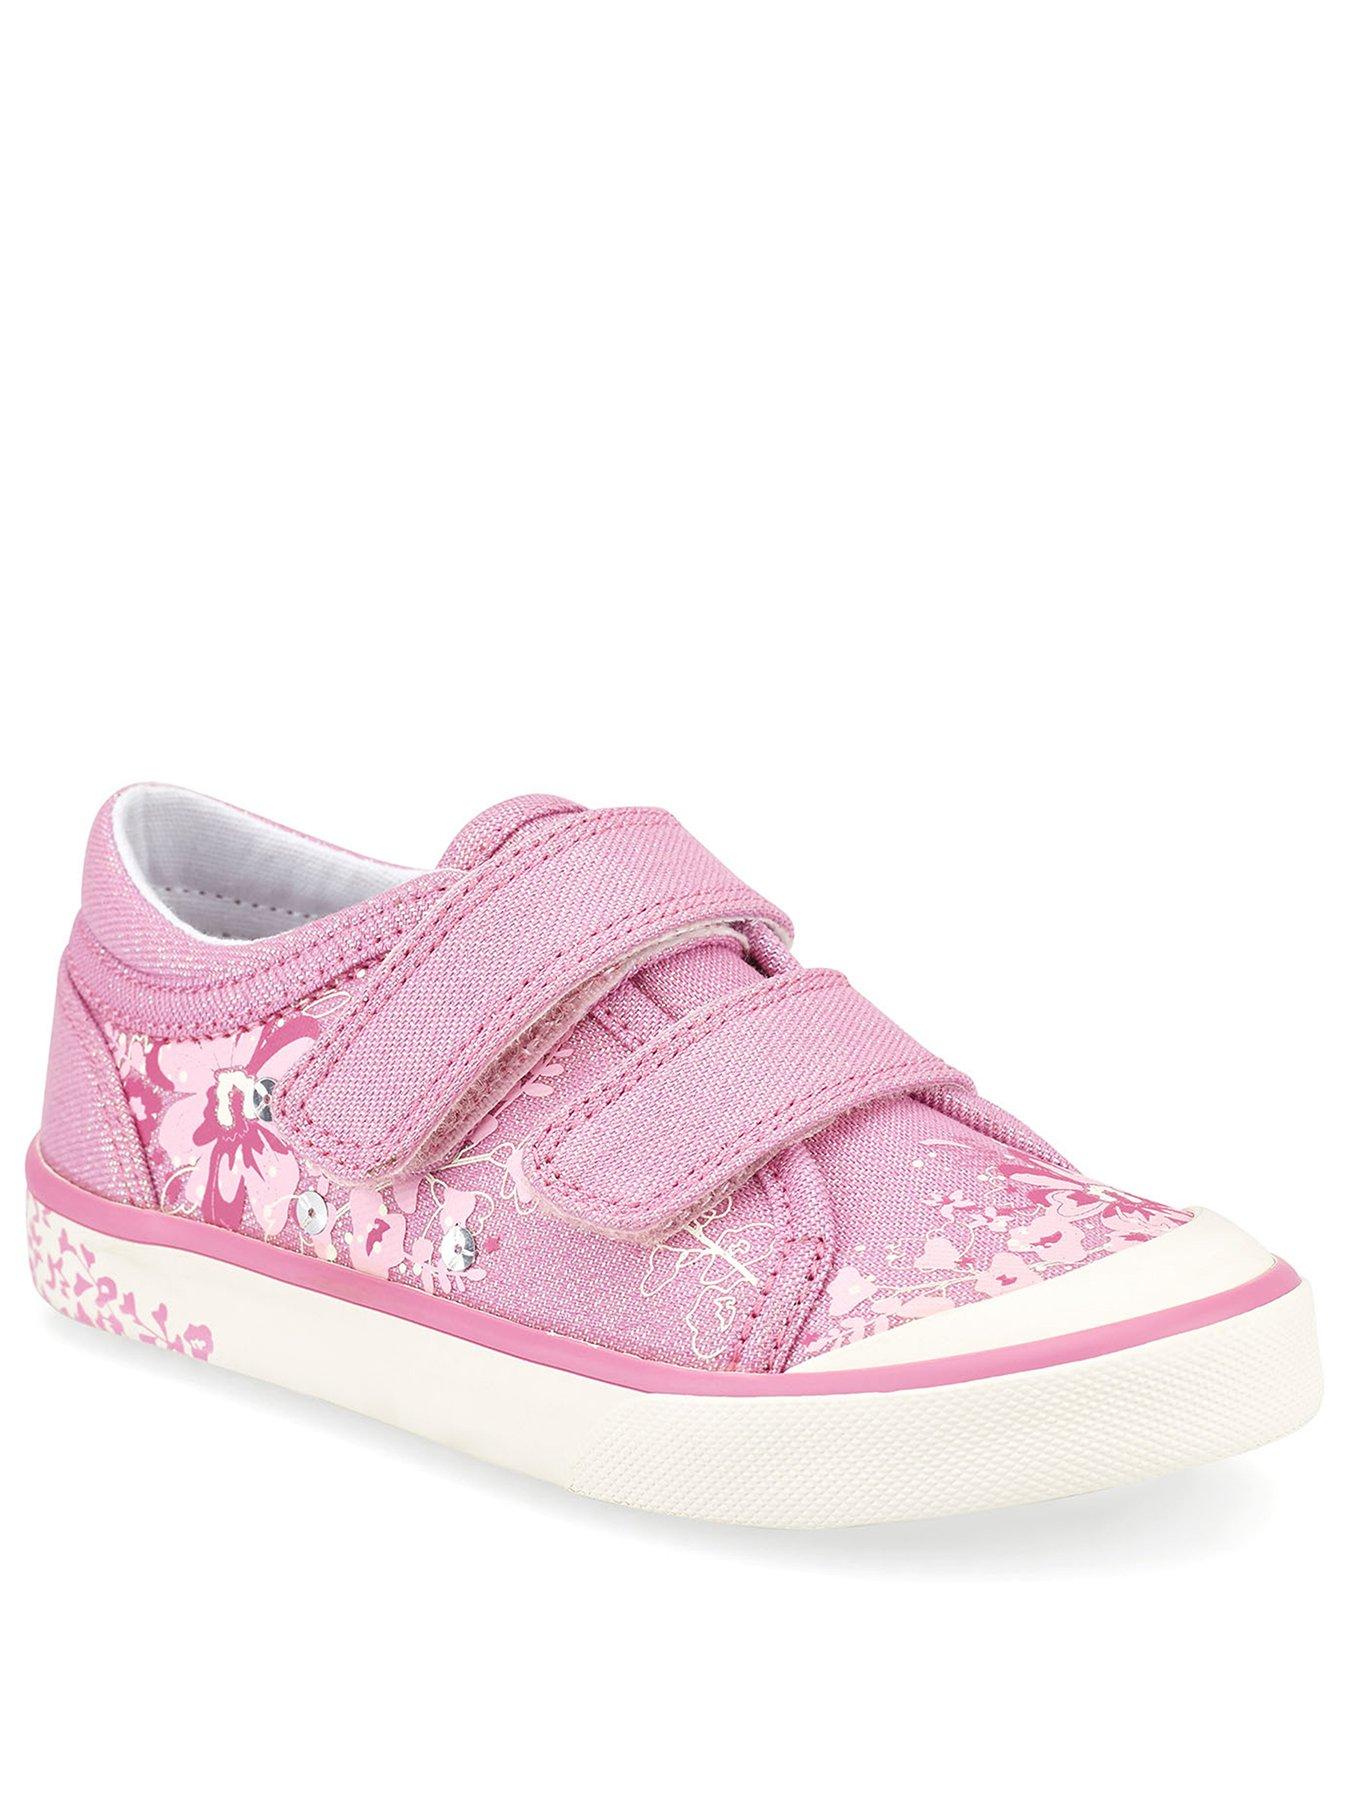 Girls Pink Pumps Edith Navy Glitter Start Rite Canvas Shoes 